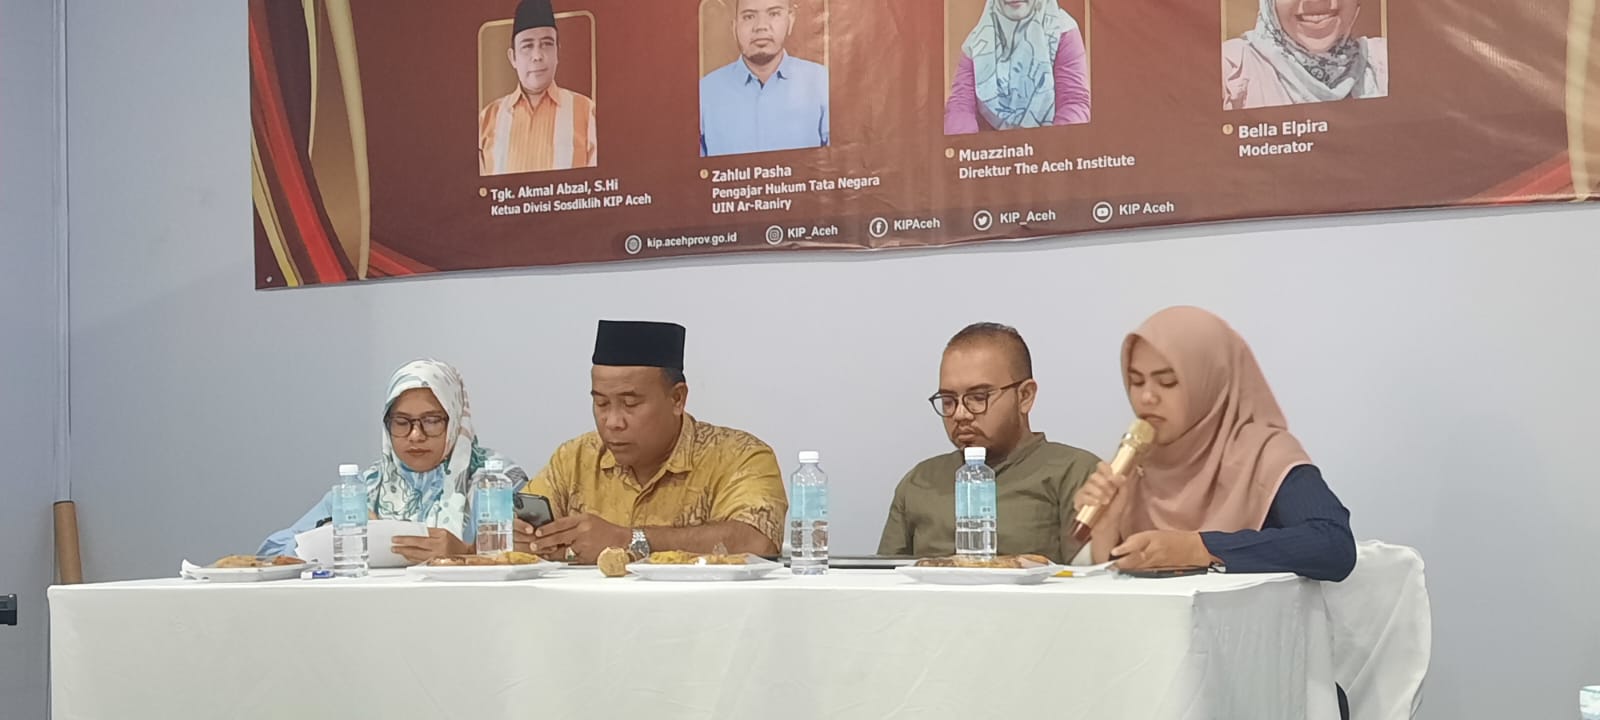 Adakan Diskusi, KIP Aceh dan The Aceh Institute Bahas Pentingnya Partisipasi Politik